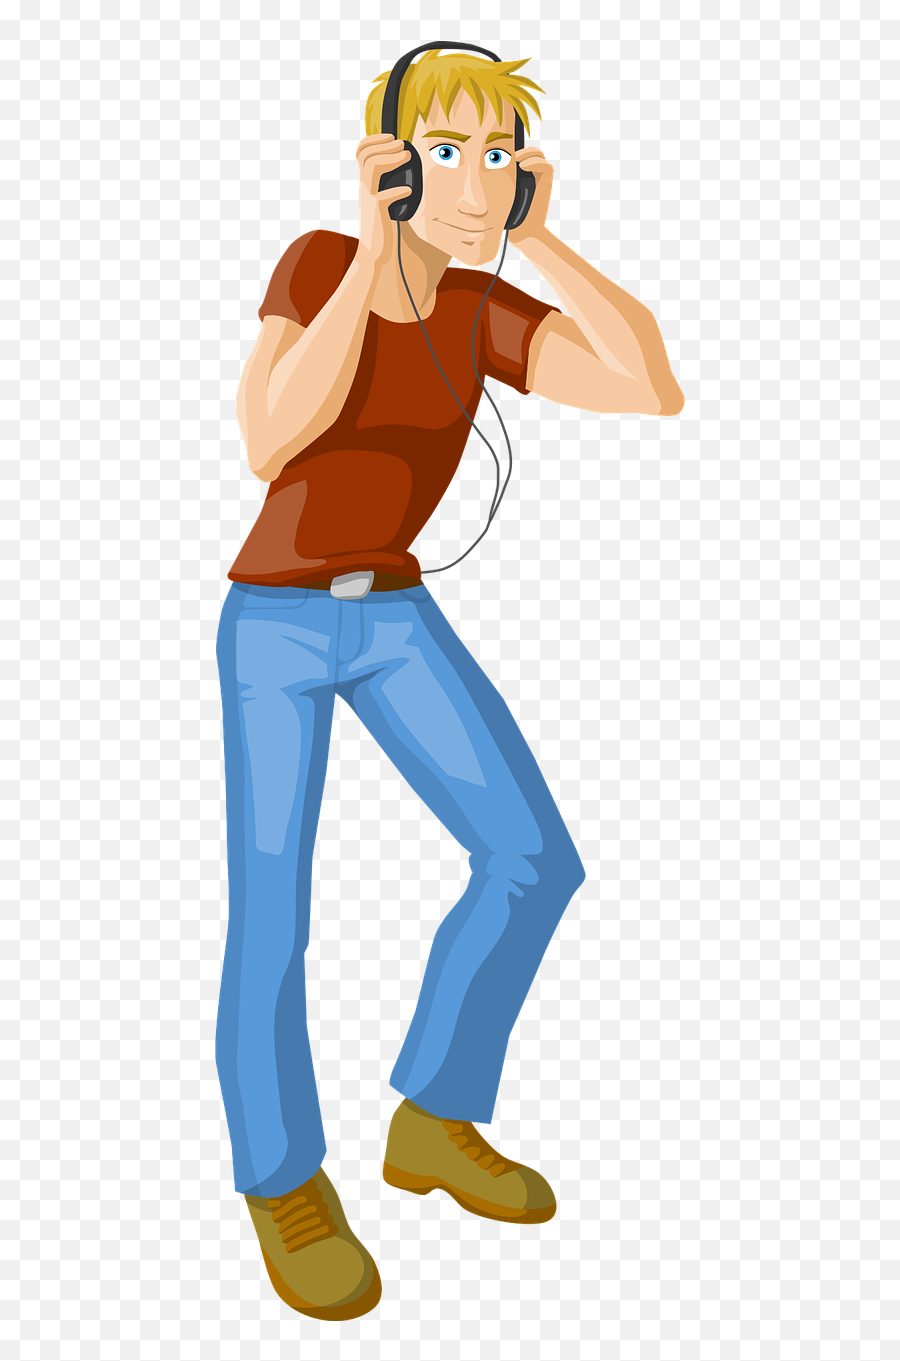 Man Guy Jeans Dancing Headphones Music Listening - Headphone With Man Png,Cartoon Headphones Png